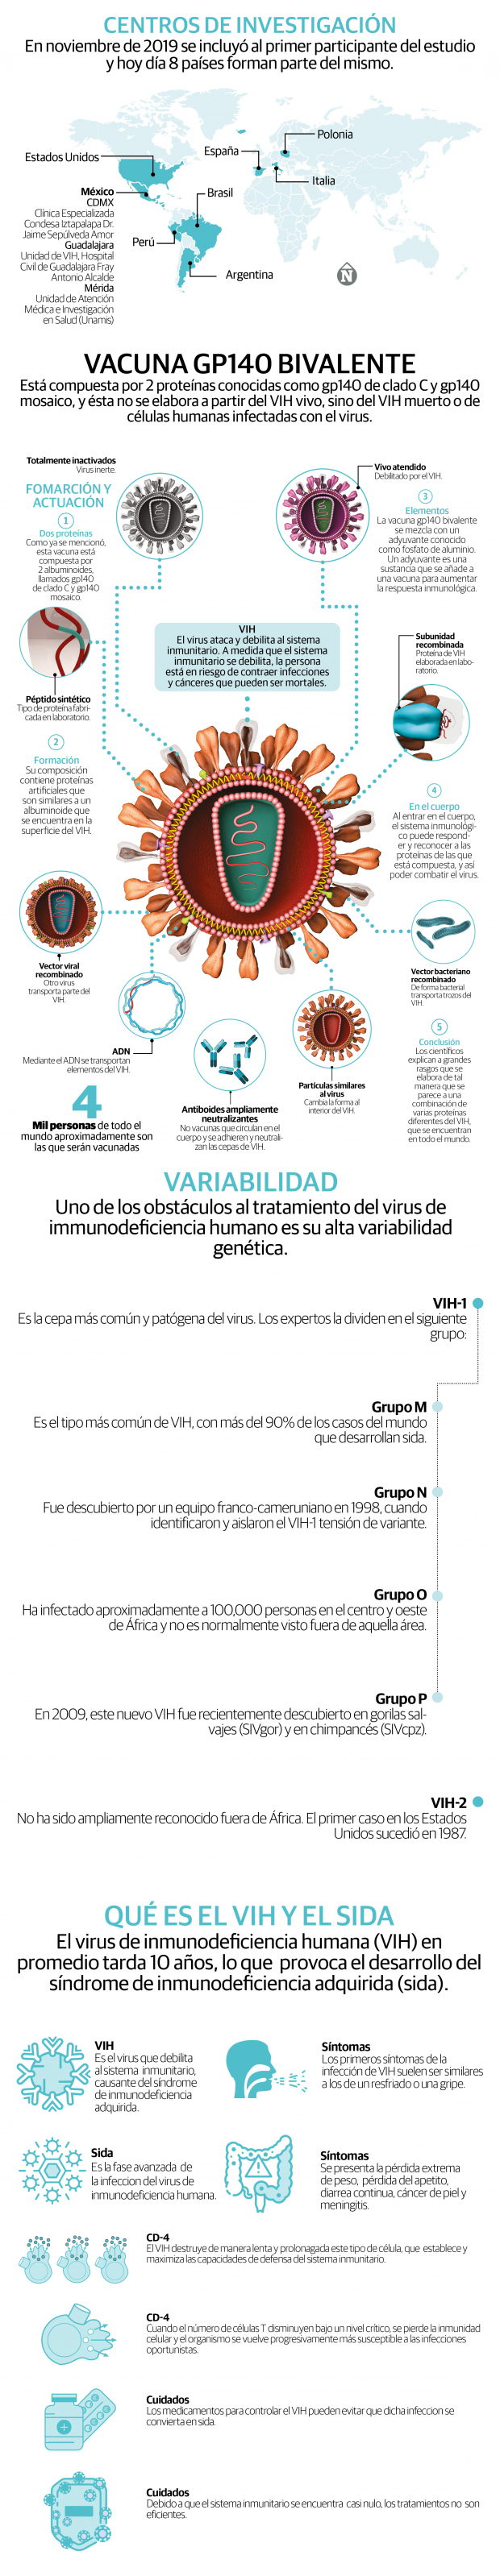 La primera vacuna contra el VIH llega a fase III, luego de 40 años de existencia del virus